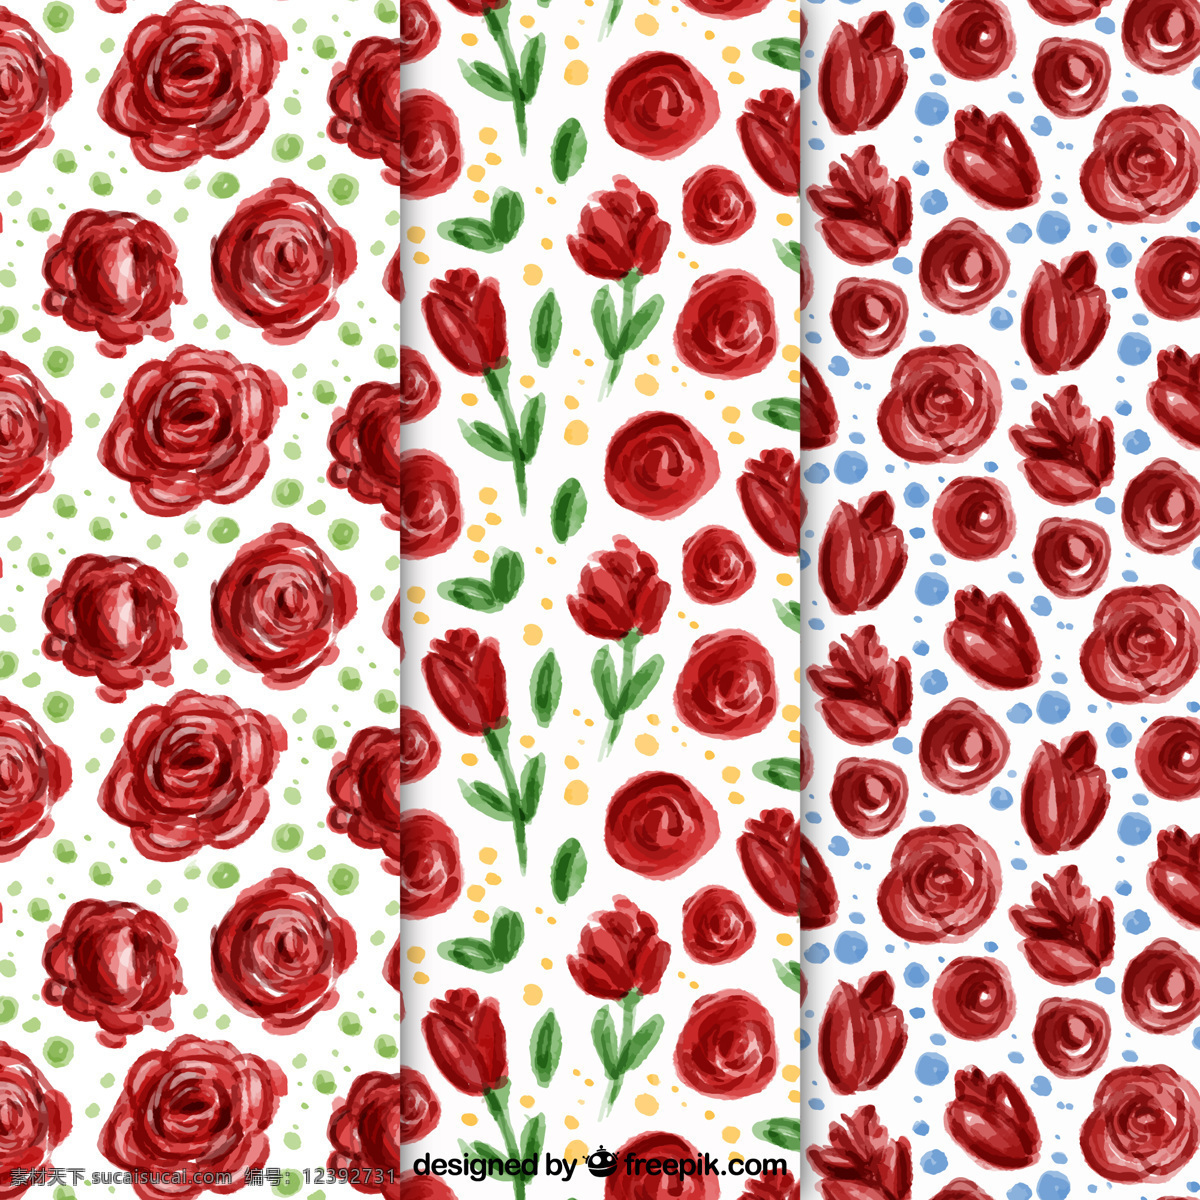 水彩 玫瑰 图案 集 背景 花卉 自然 花卉背景 水彩花卉 花卉图案 水彩背景 春天 树叶 植物